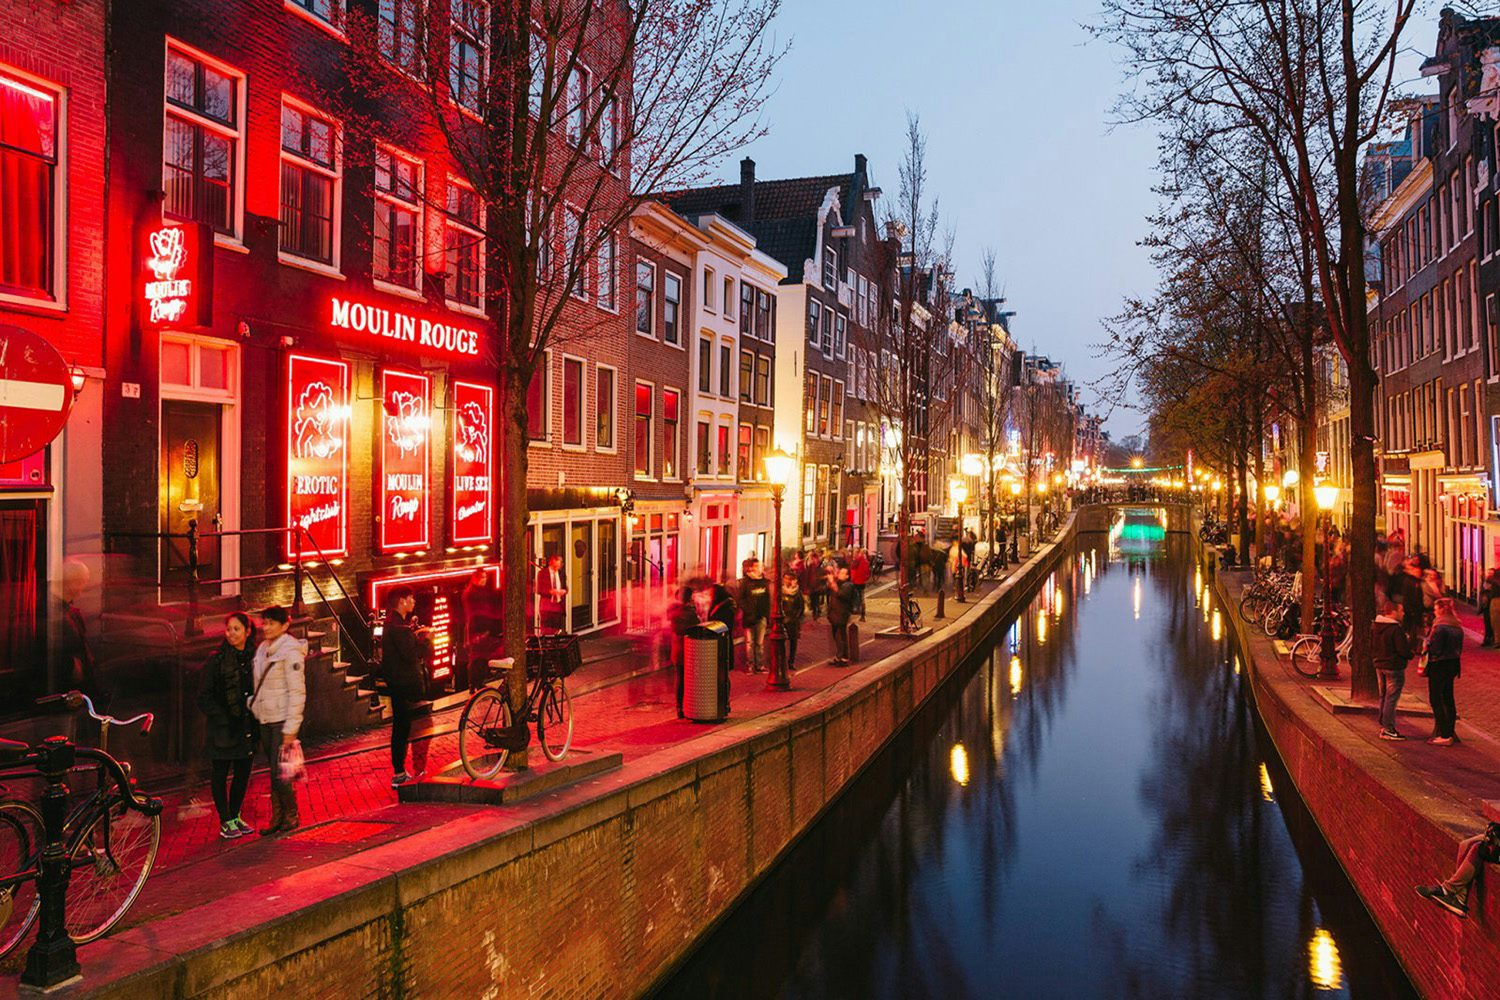 Entdecken Sie das verruchte Rotlichtviertel Amsterdams während einem humorv...